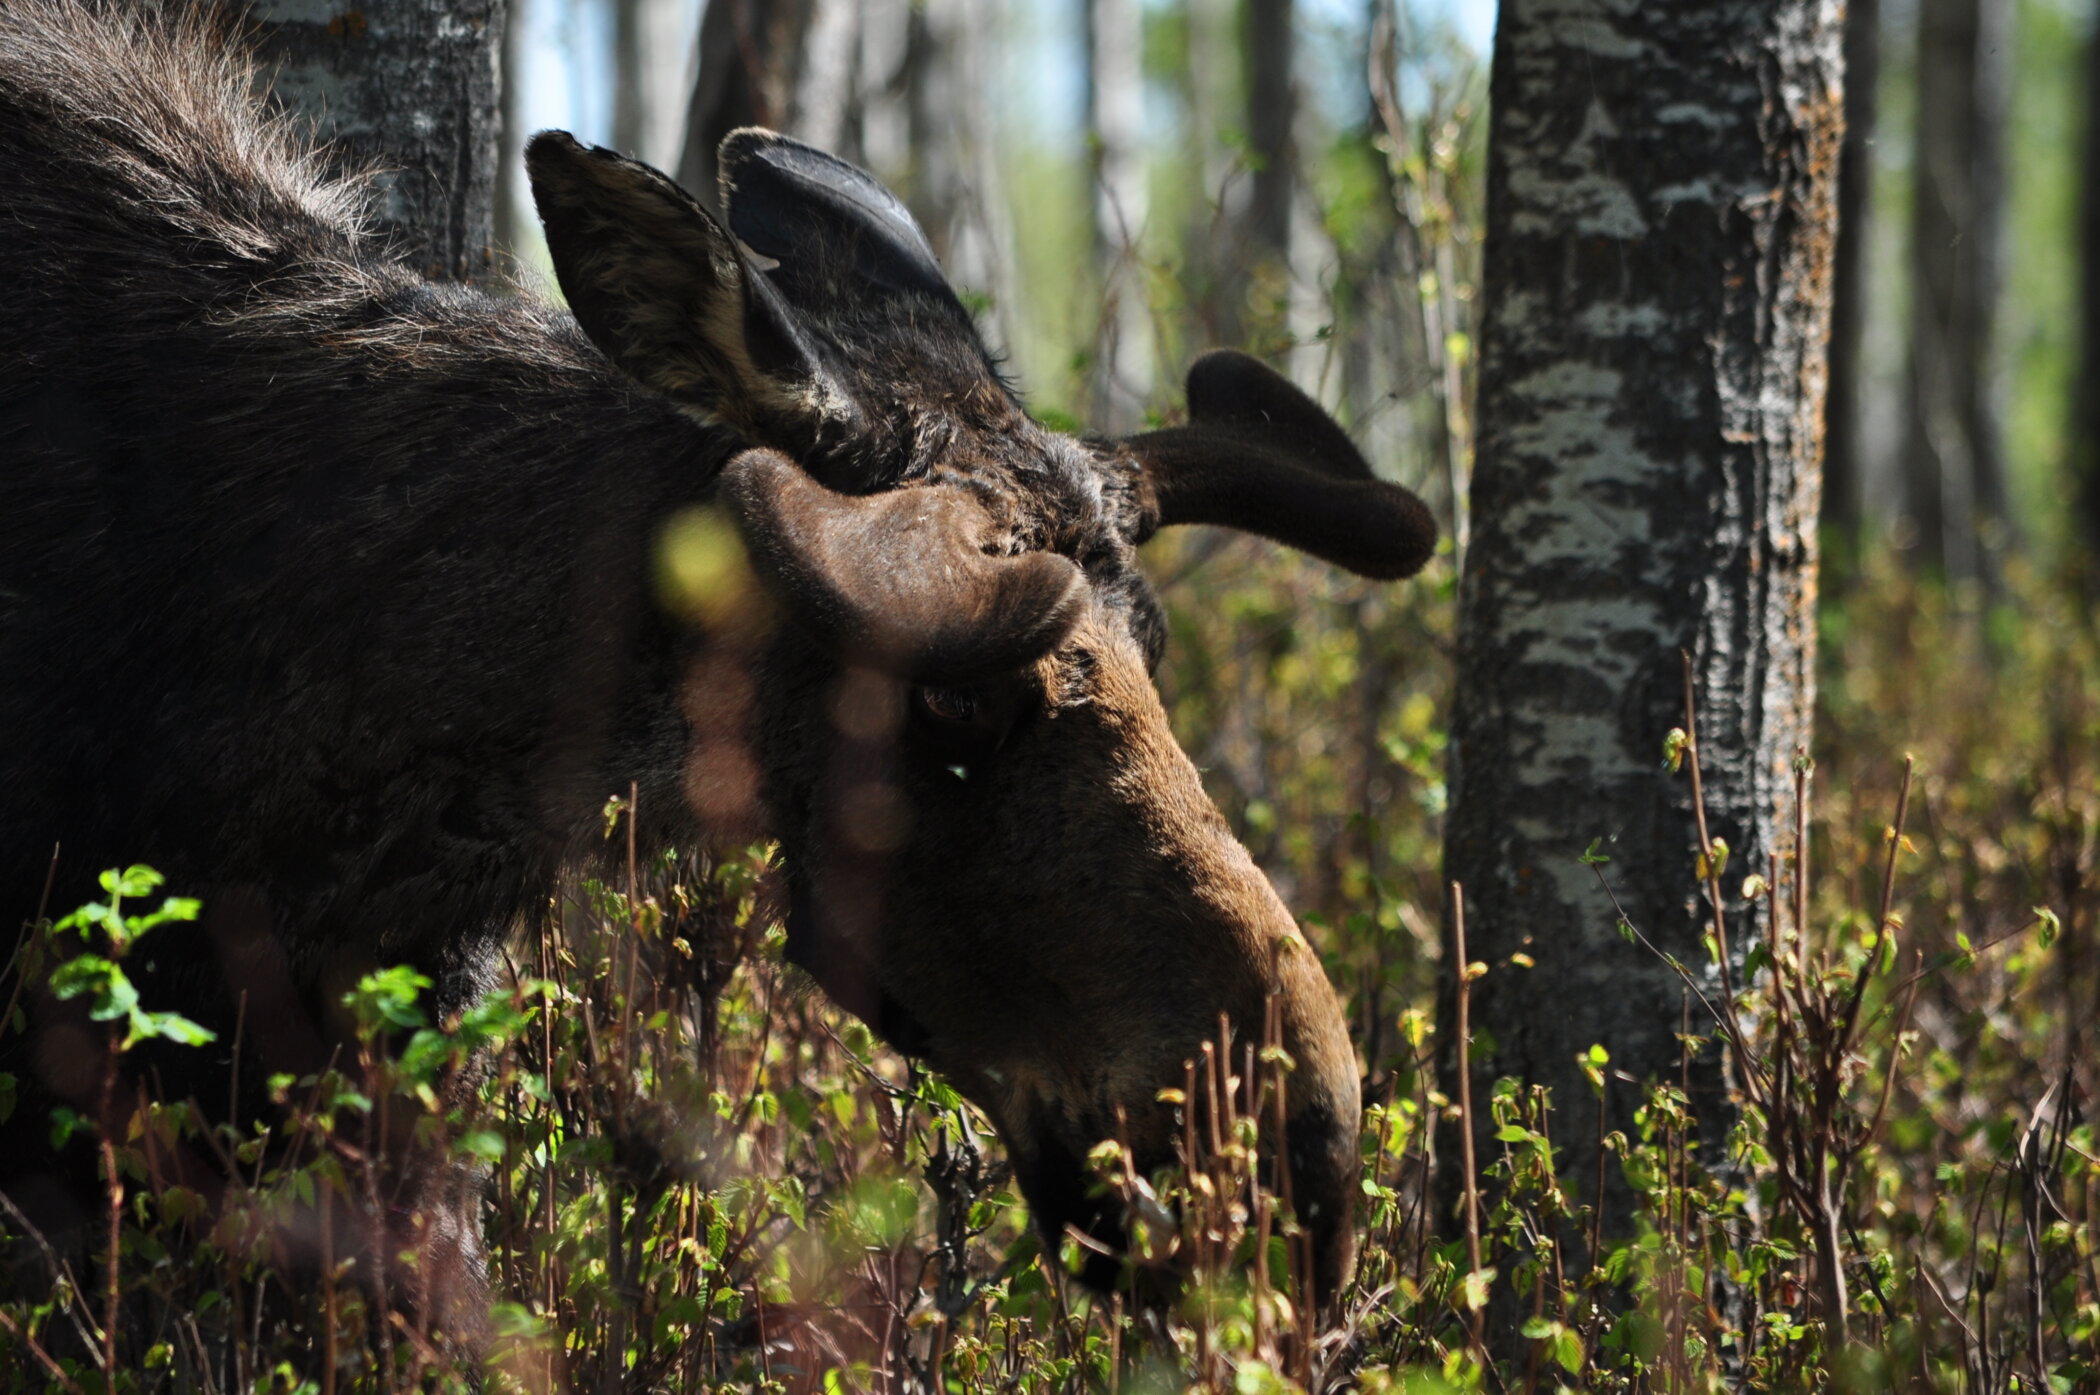 Bull moose browsing shrubs